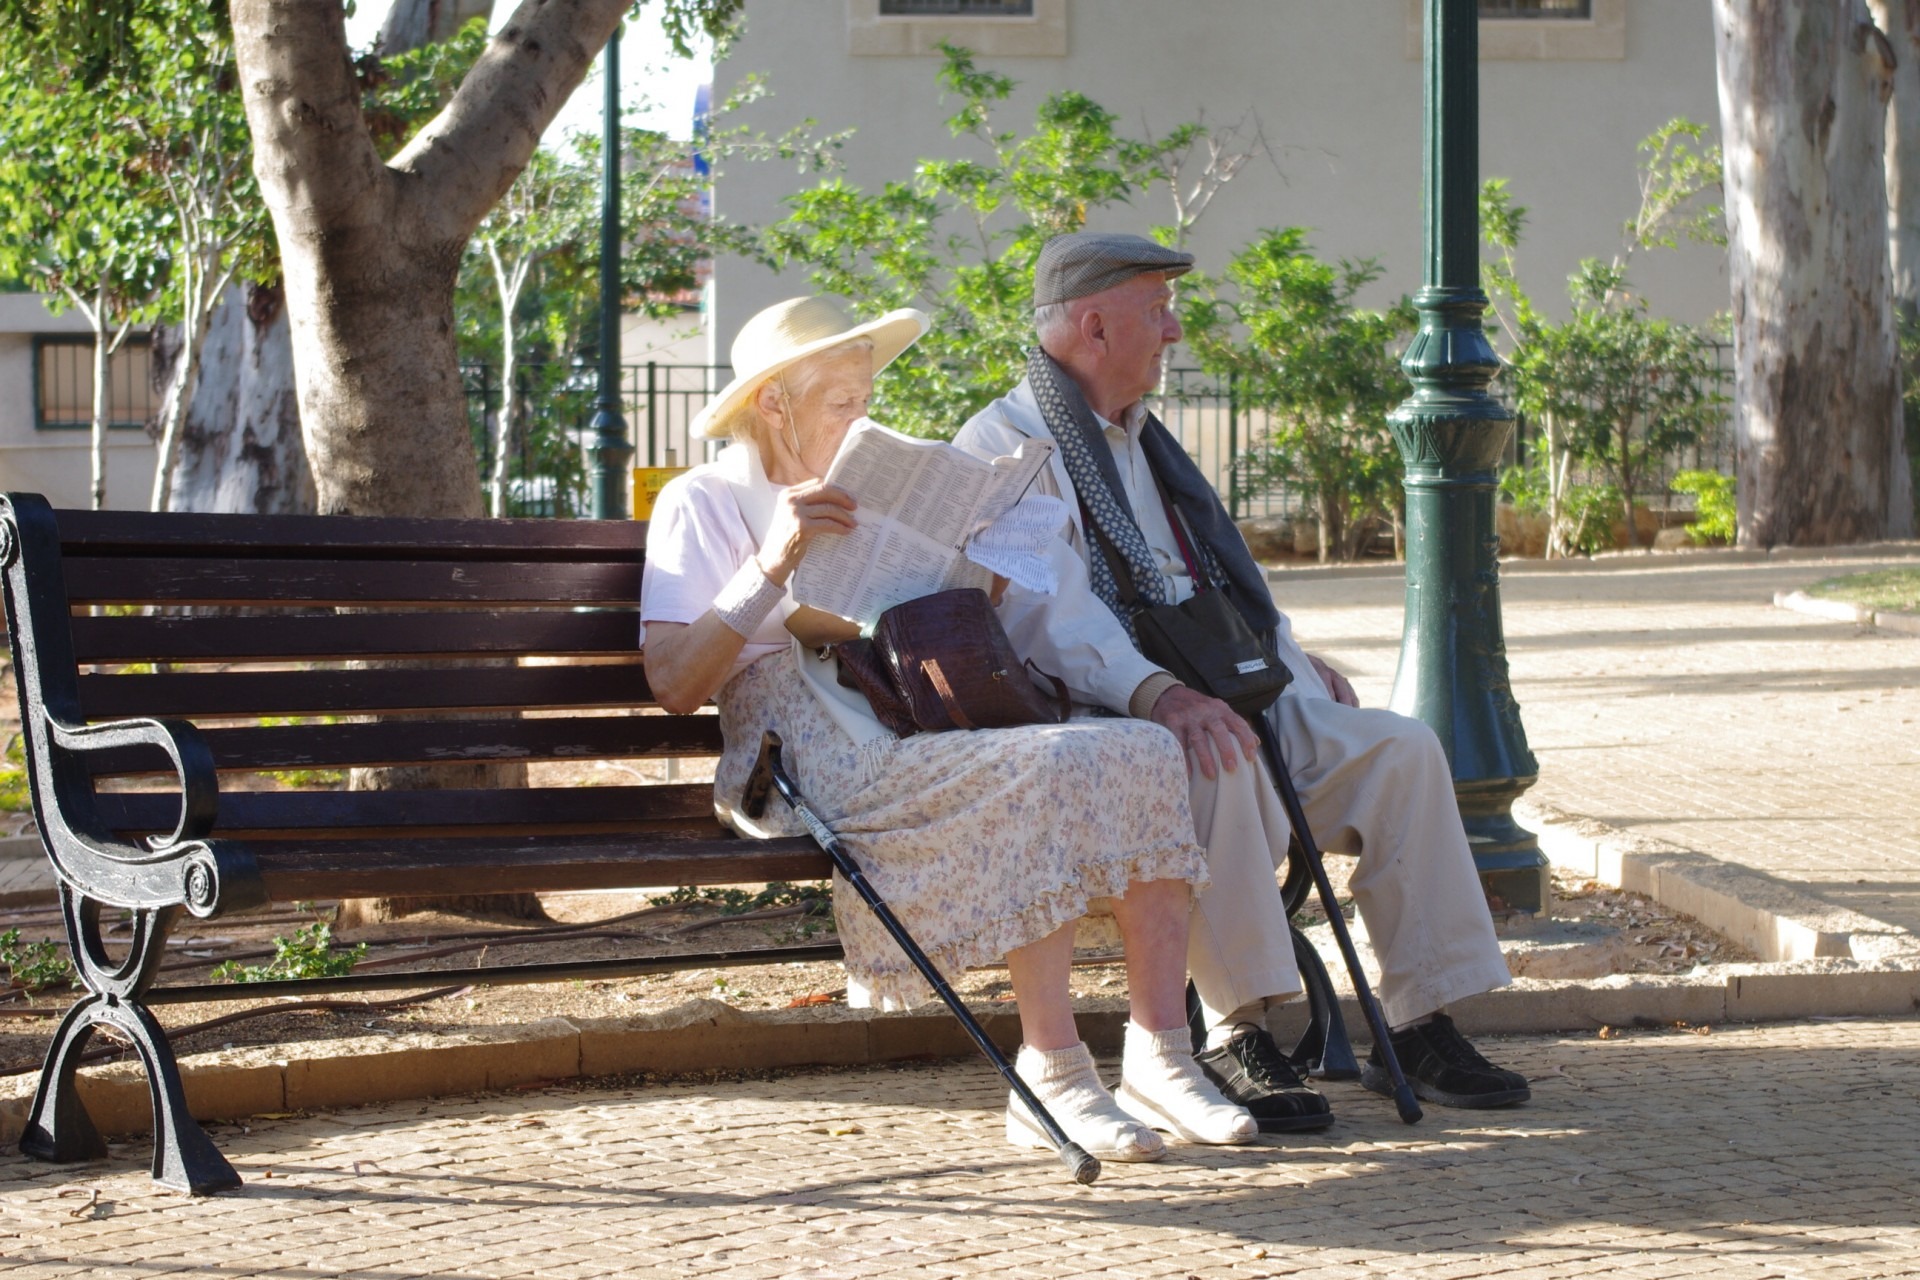 Пенсионеры ликуют: в 2025 году пенсии вырастут дважды для всех